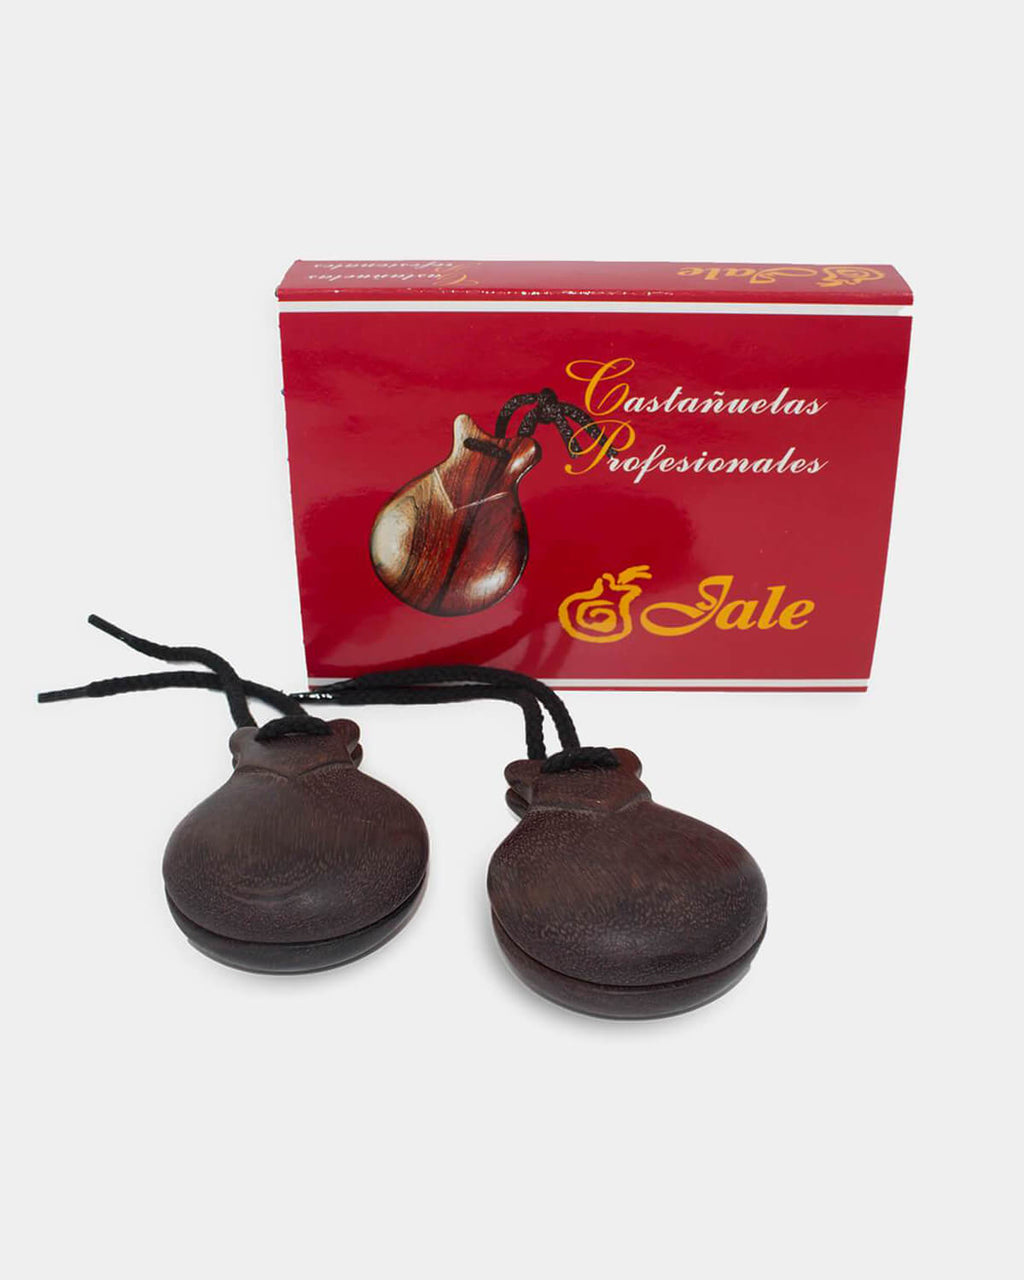 Castagnettes imitation bois granadillo pour le flamenco de Jale,  Castagnettes Instruments flamenco espagnol